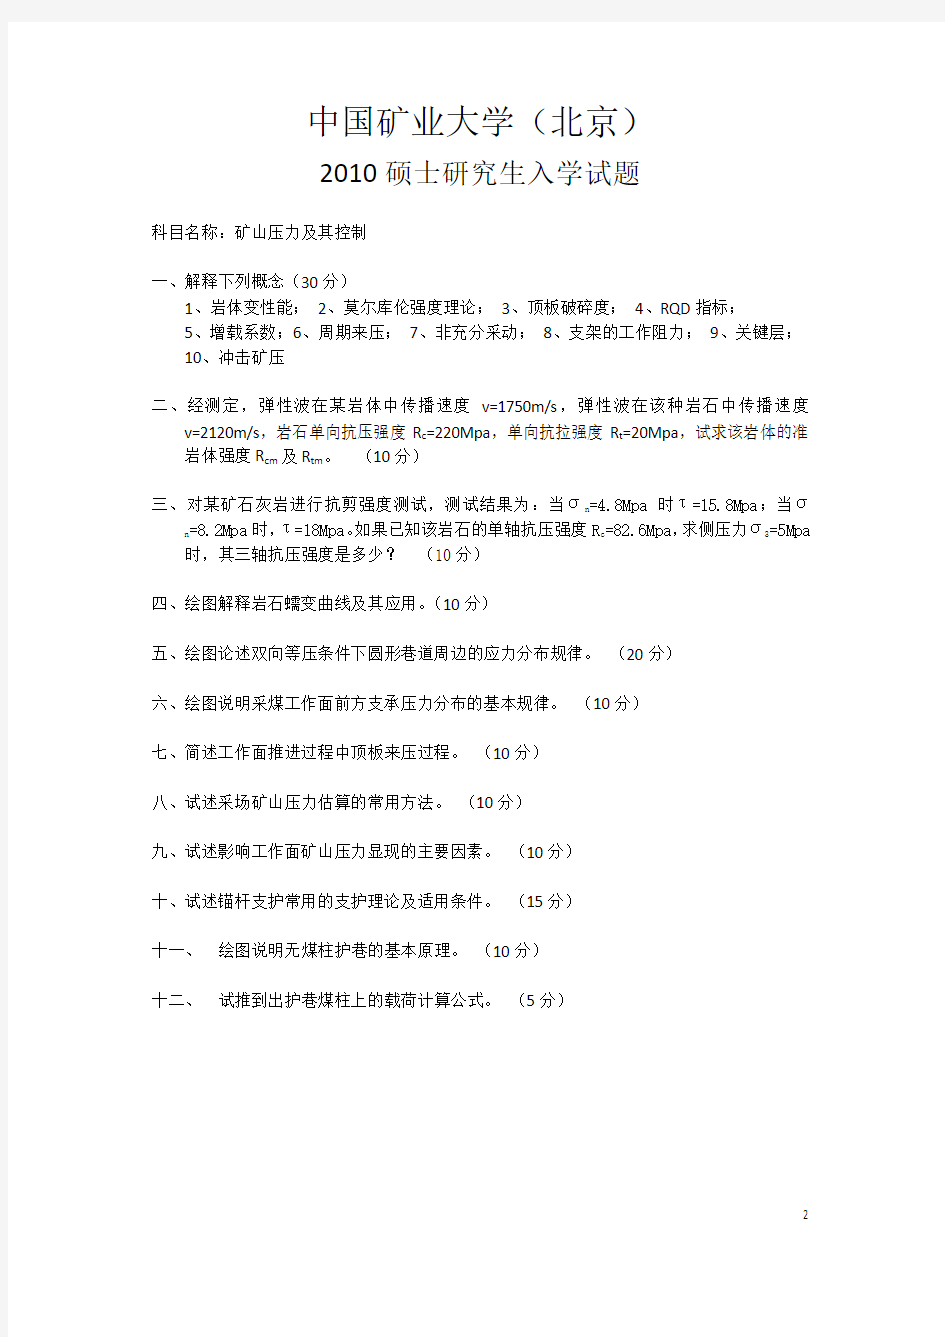 中国矿业大学(北京)矿山压力及岩层控制真题2006——2012